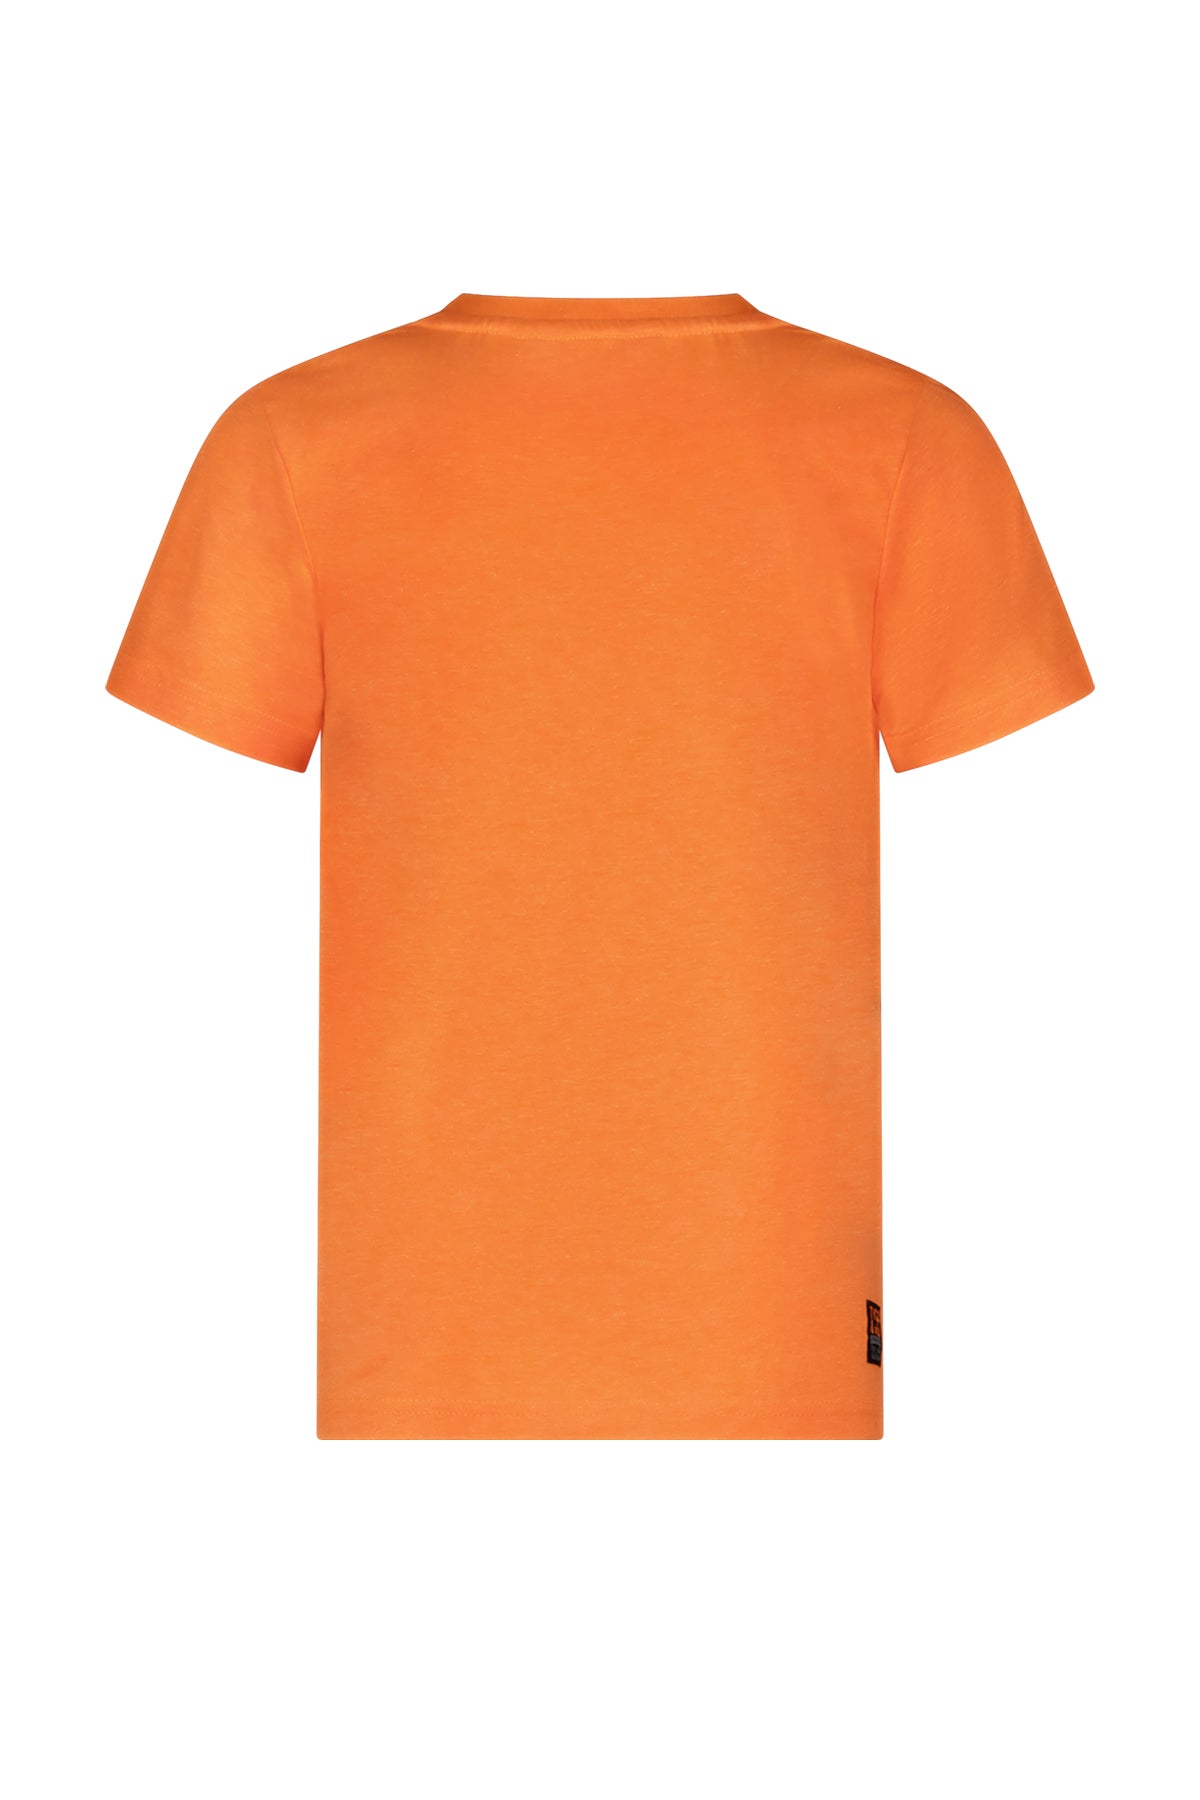 T-Shirt Holland